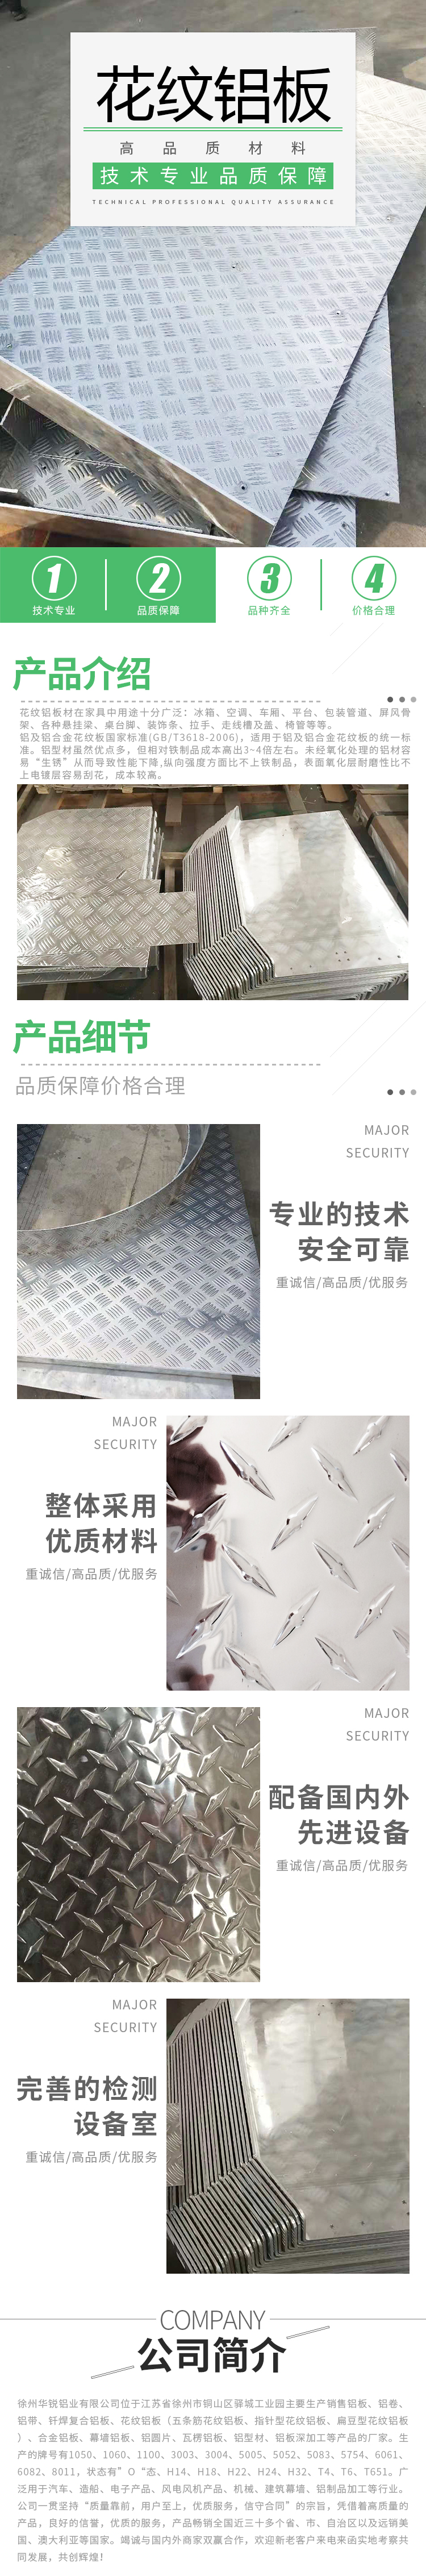 徐州市五条筋花纹铝板厂家五条筋花纹铝板生产厂家、报价